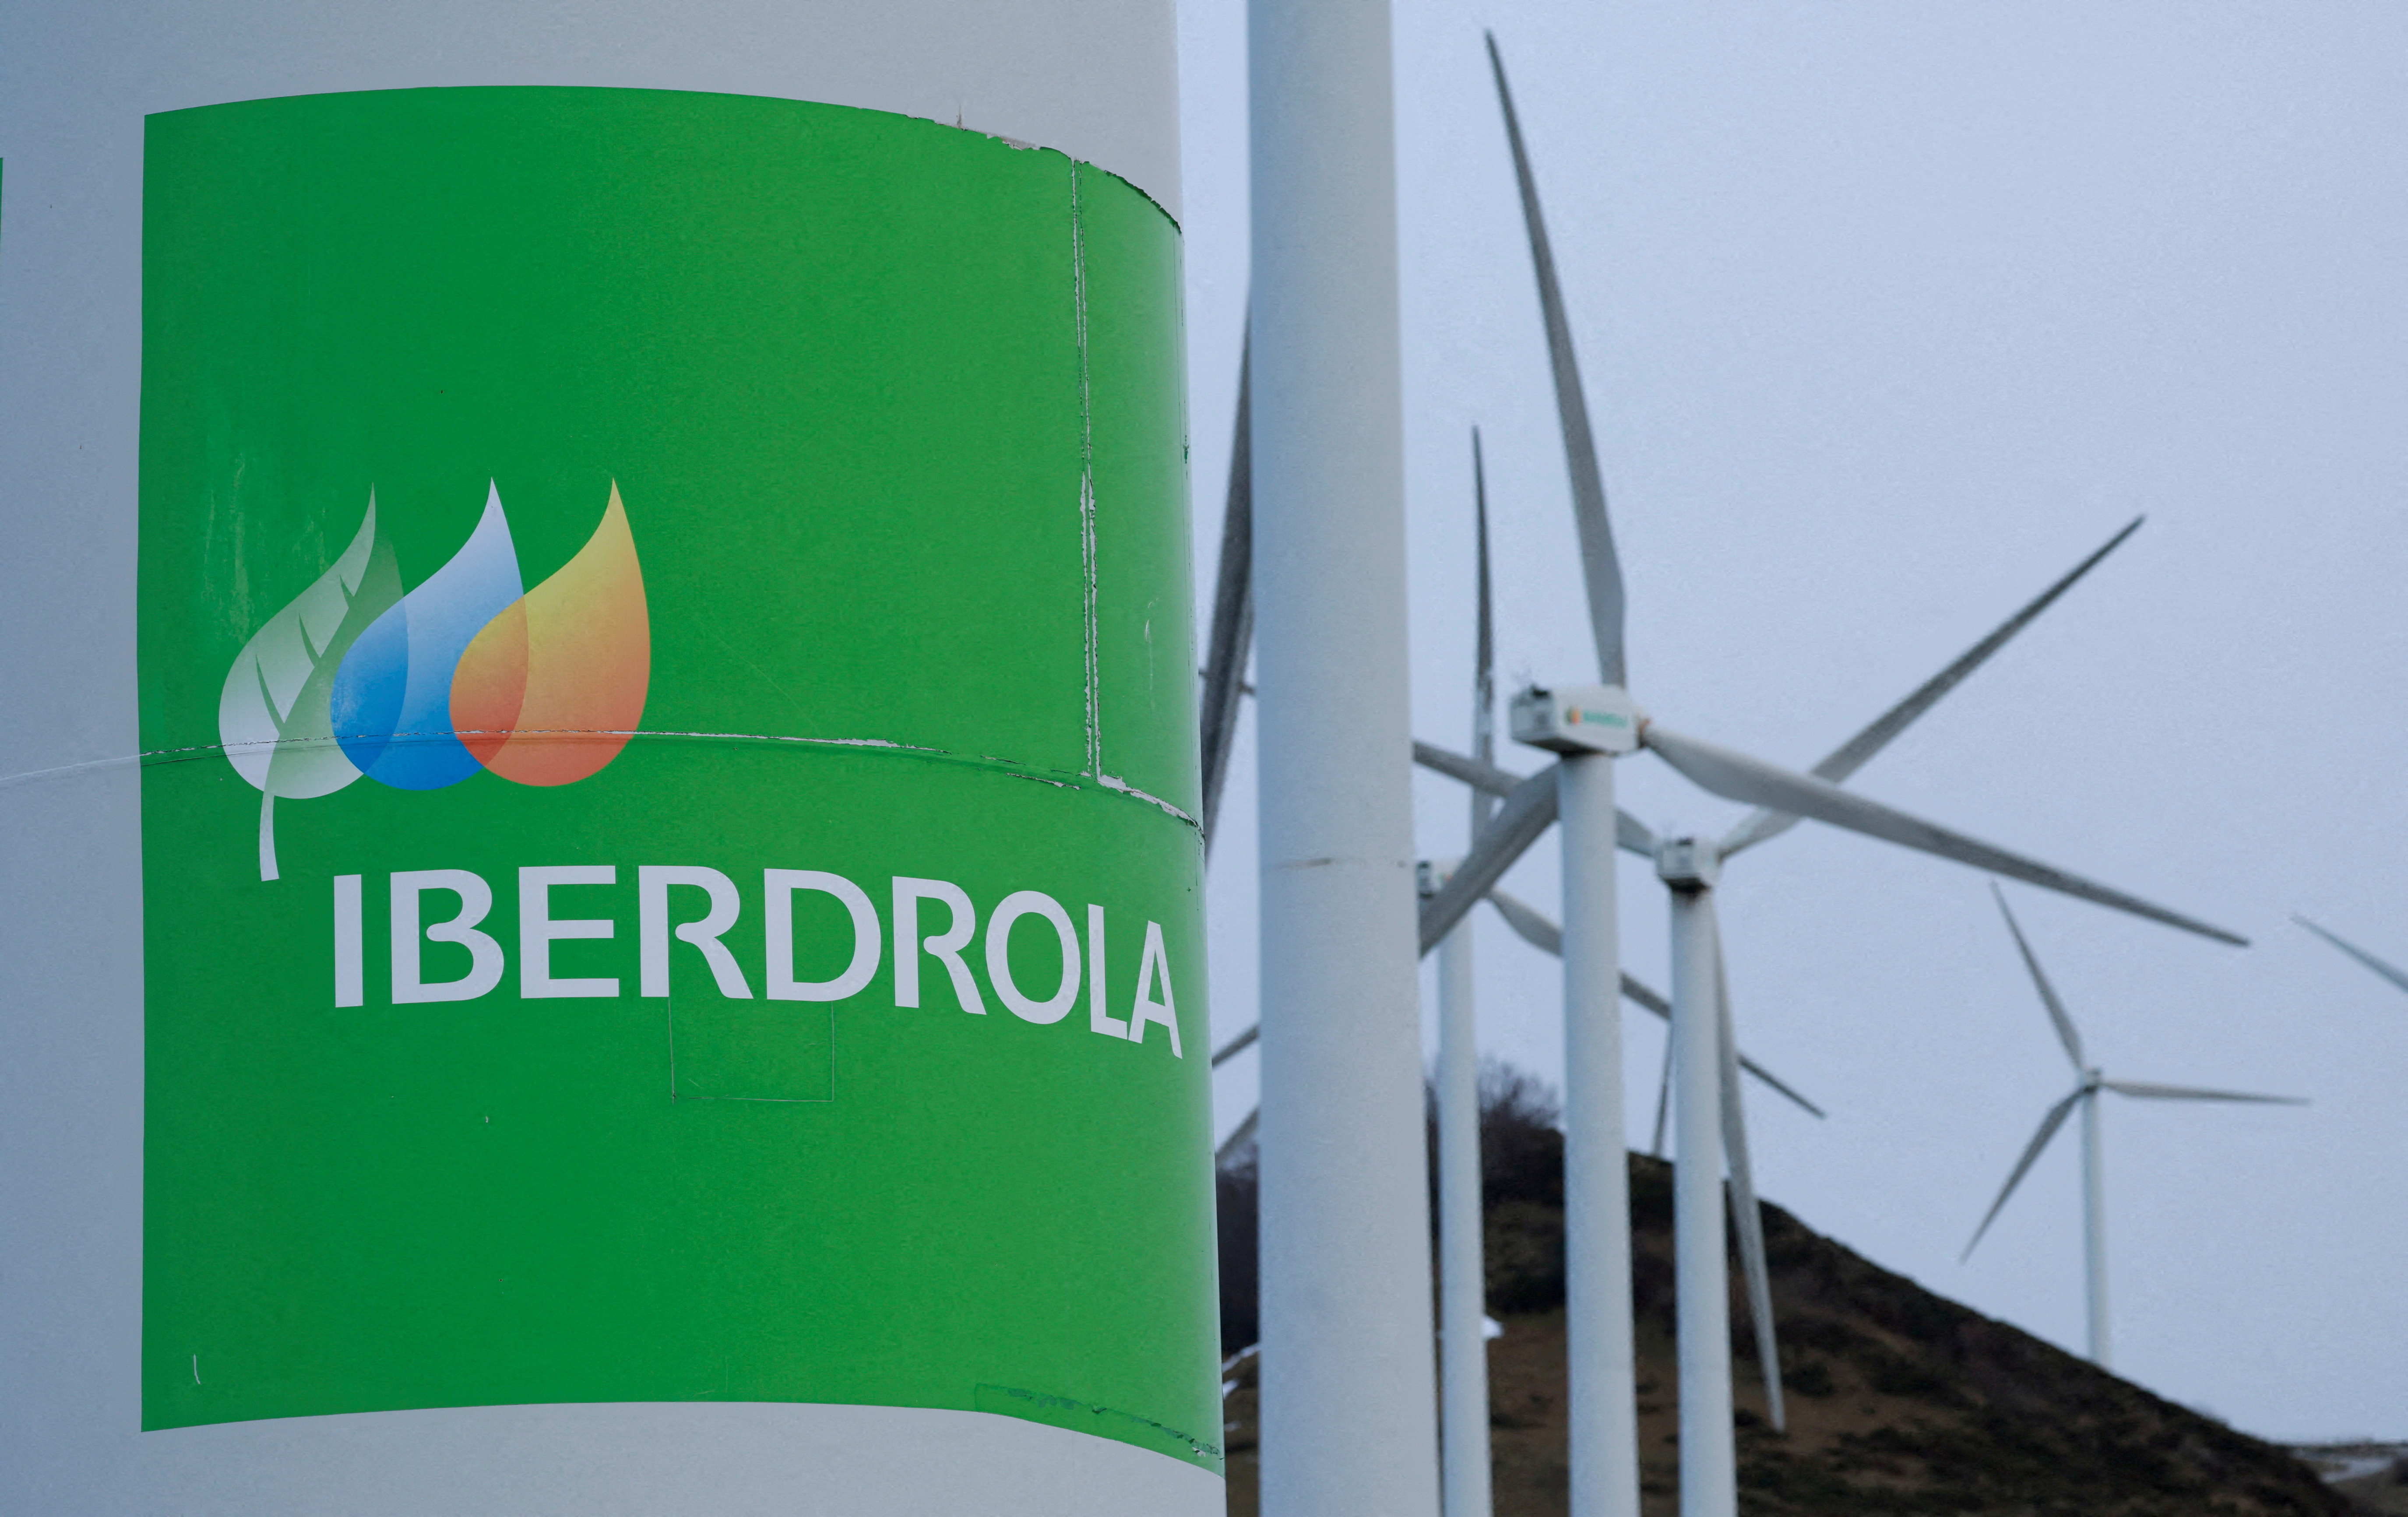 La española Iberdrola desmiente su intención de adquirir RWE